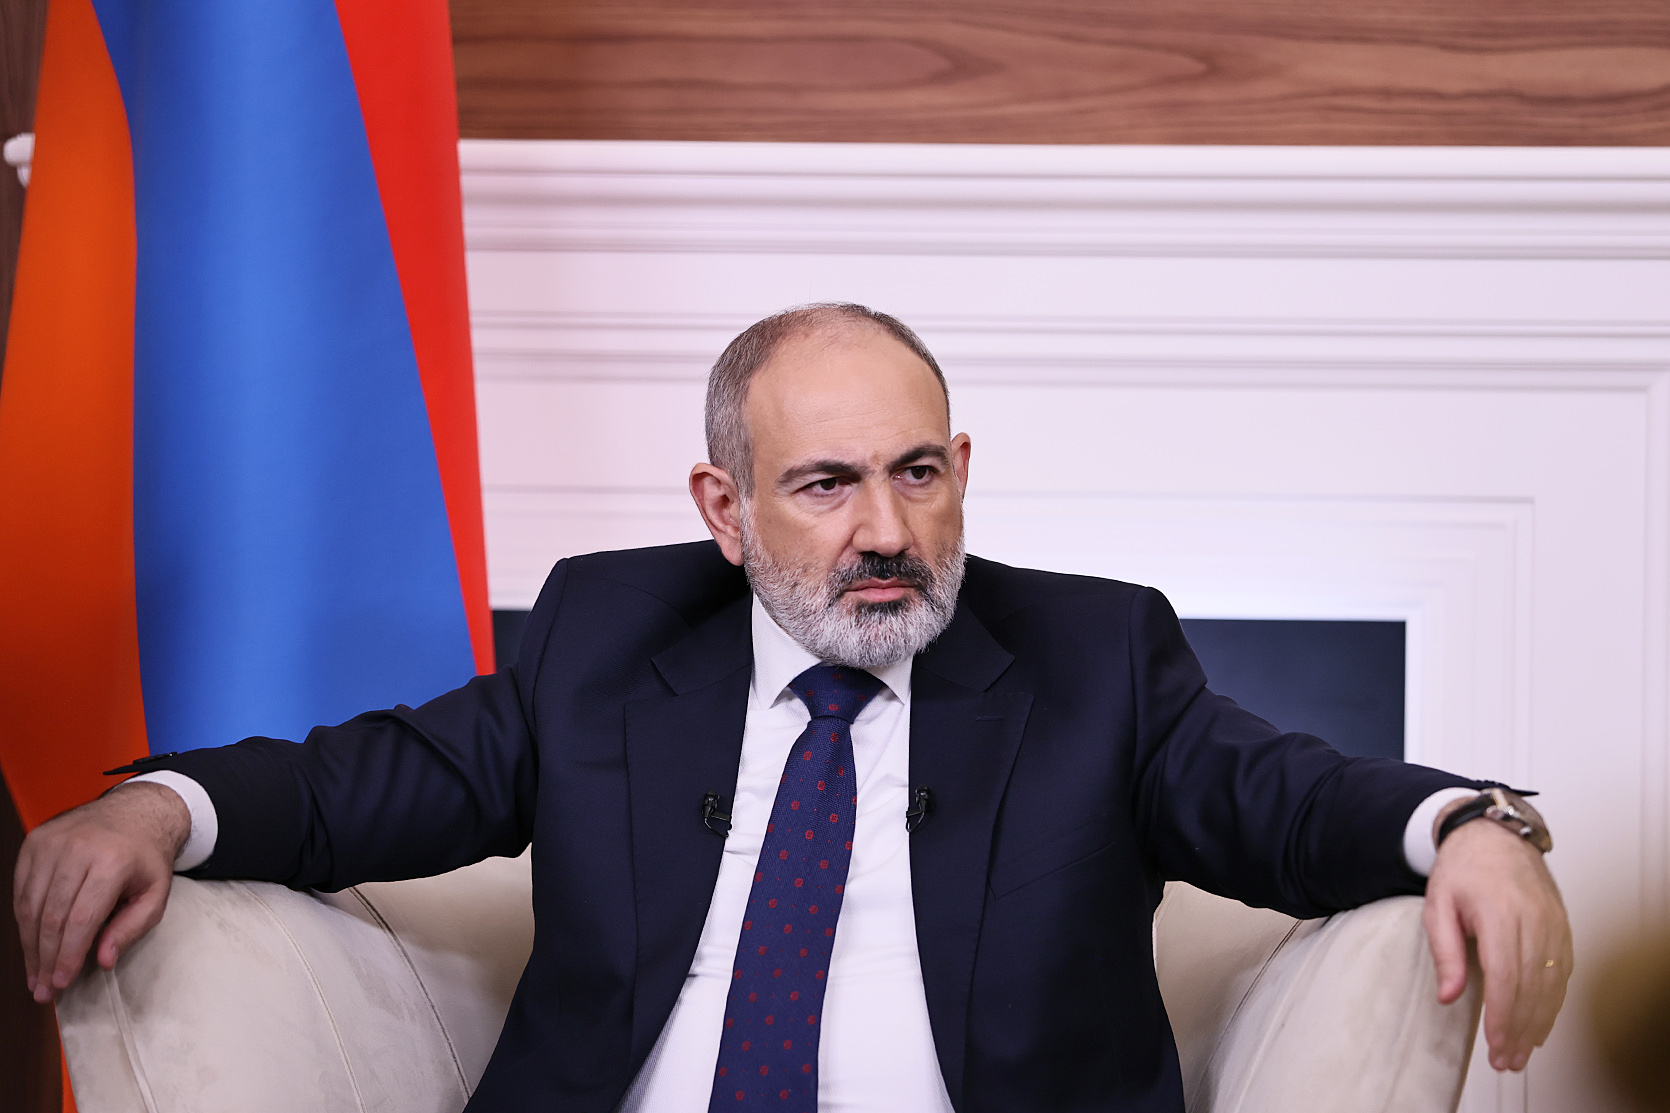  Армения утверждает принцип фиксации границы на существующих данных - Пашинян 